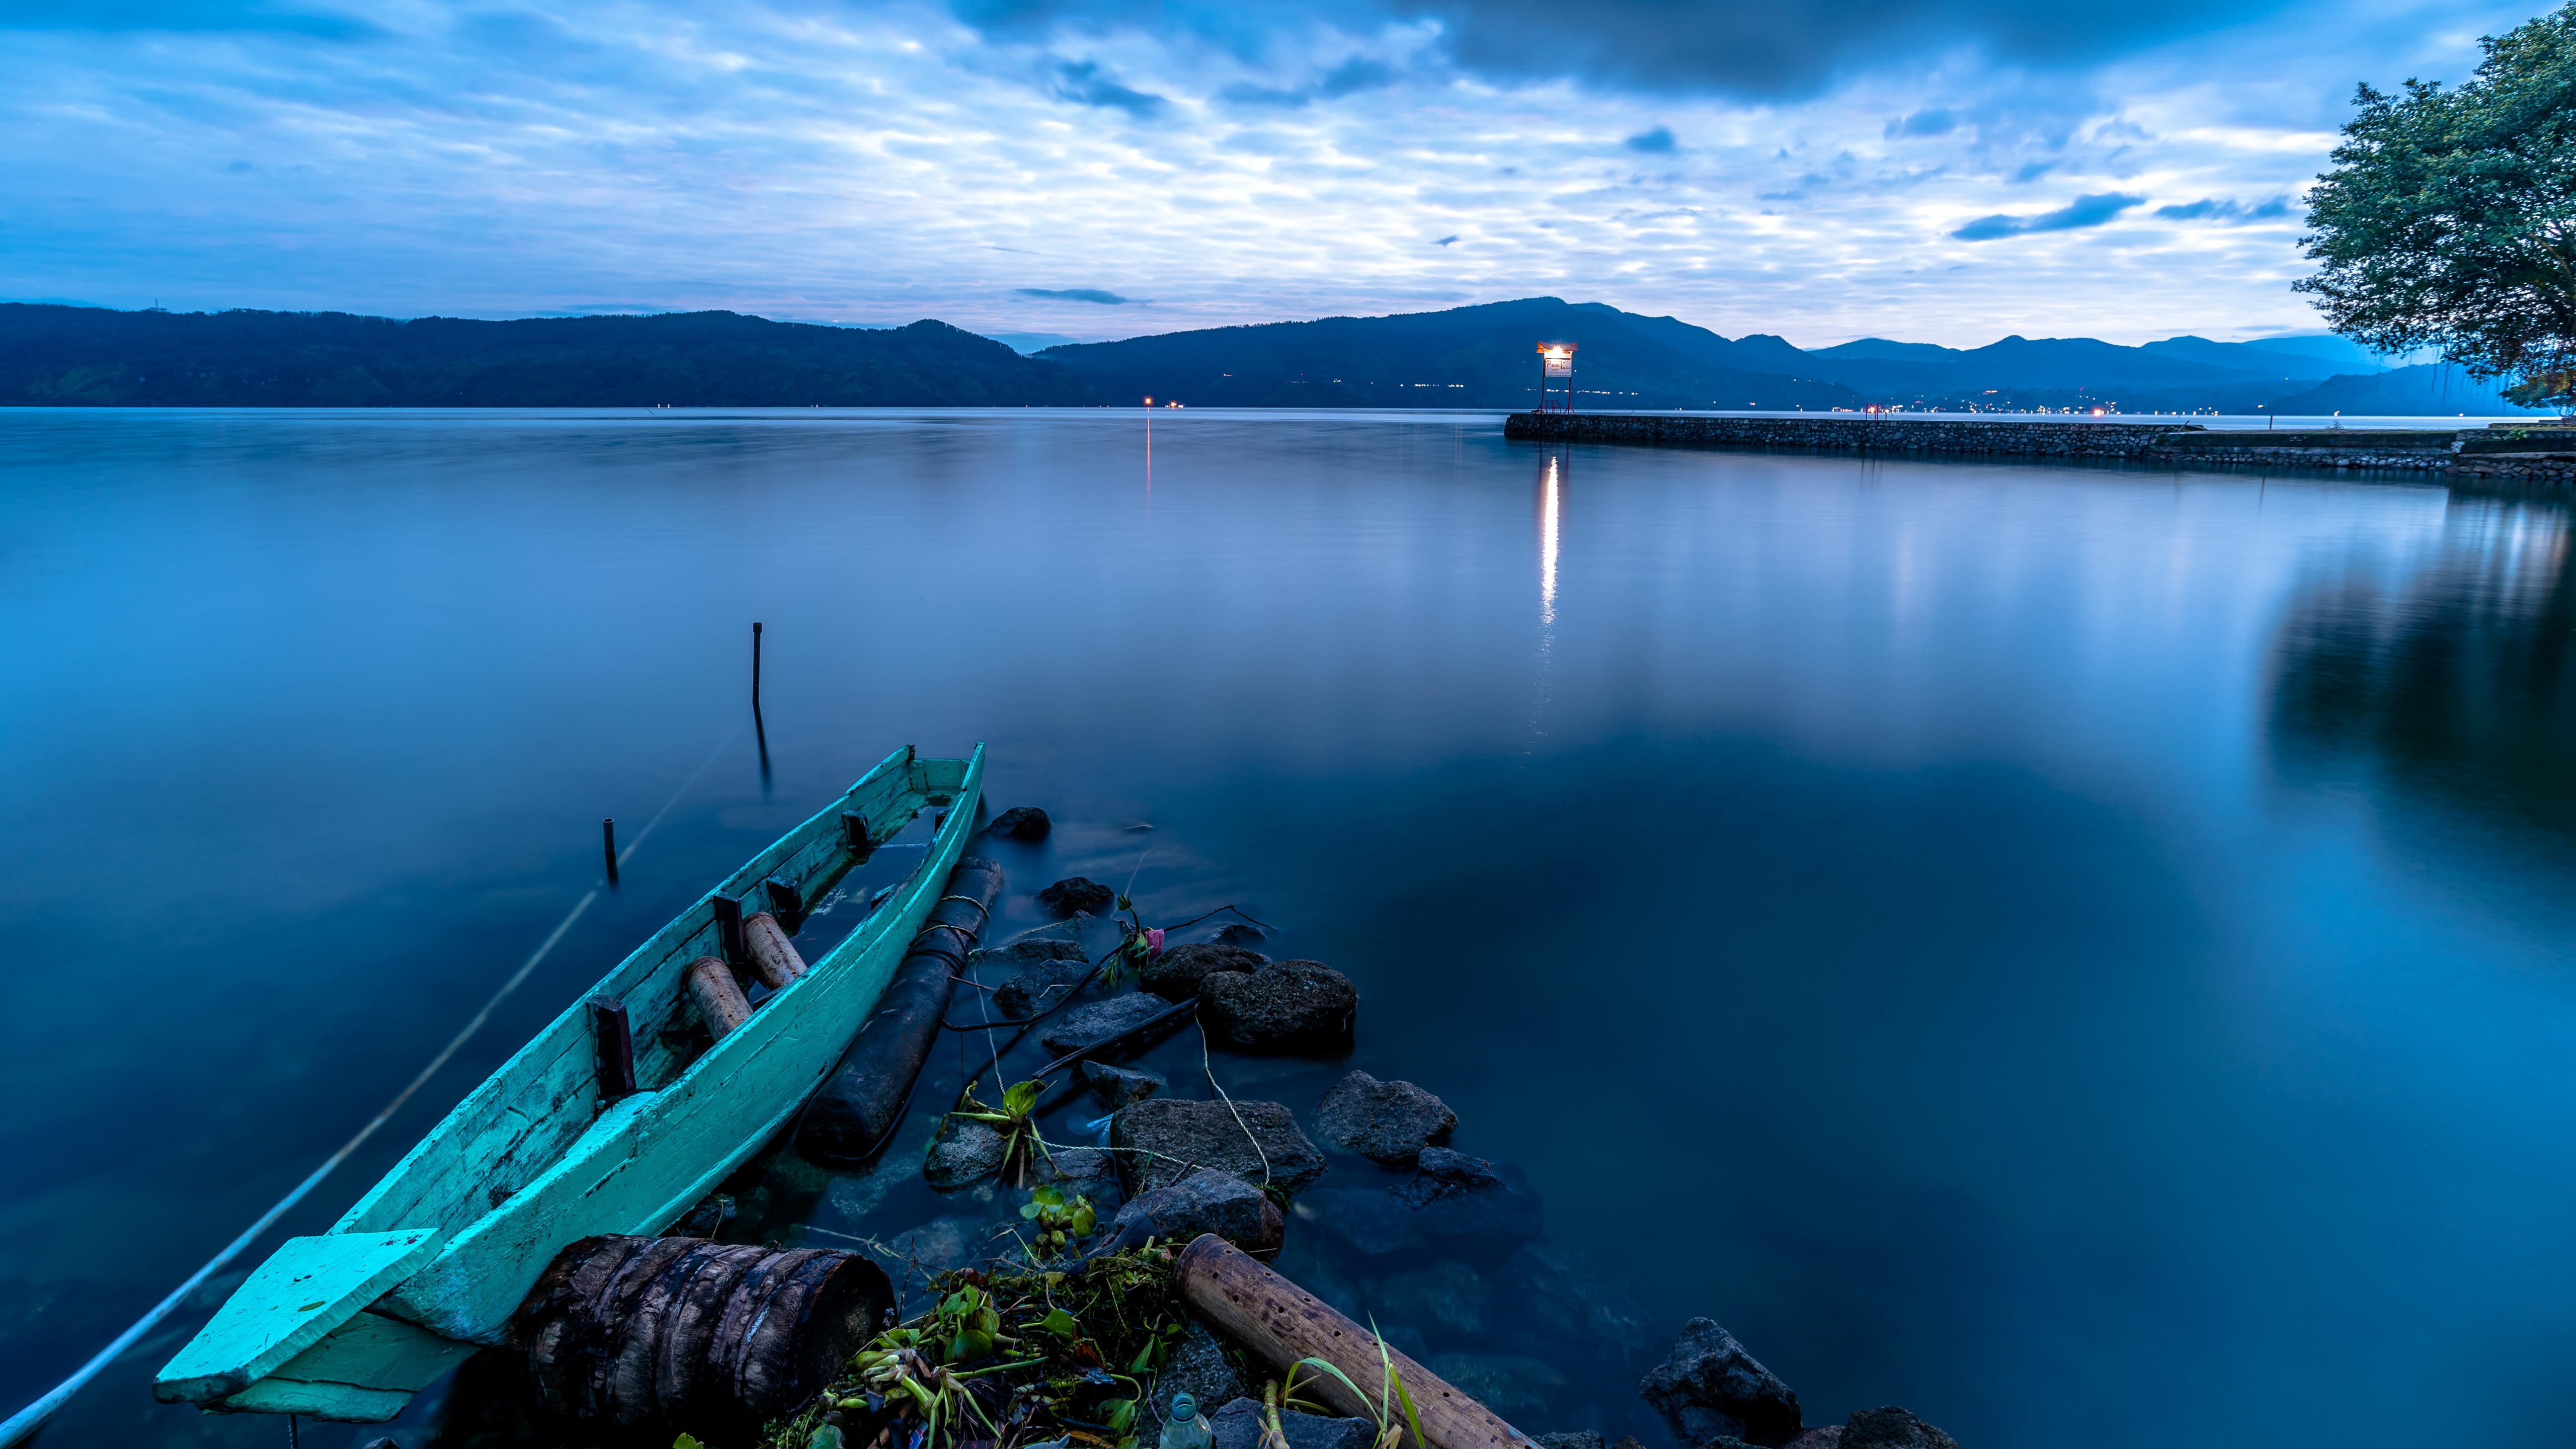 Wallpaper - Medan Indonesia Lake Toba - HD Wallpaper 